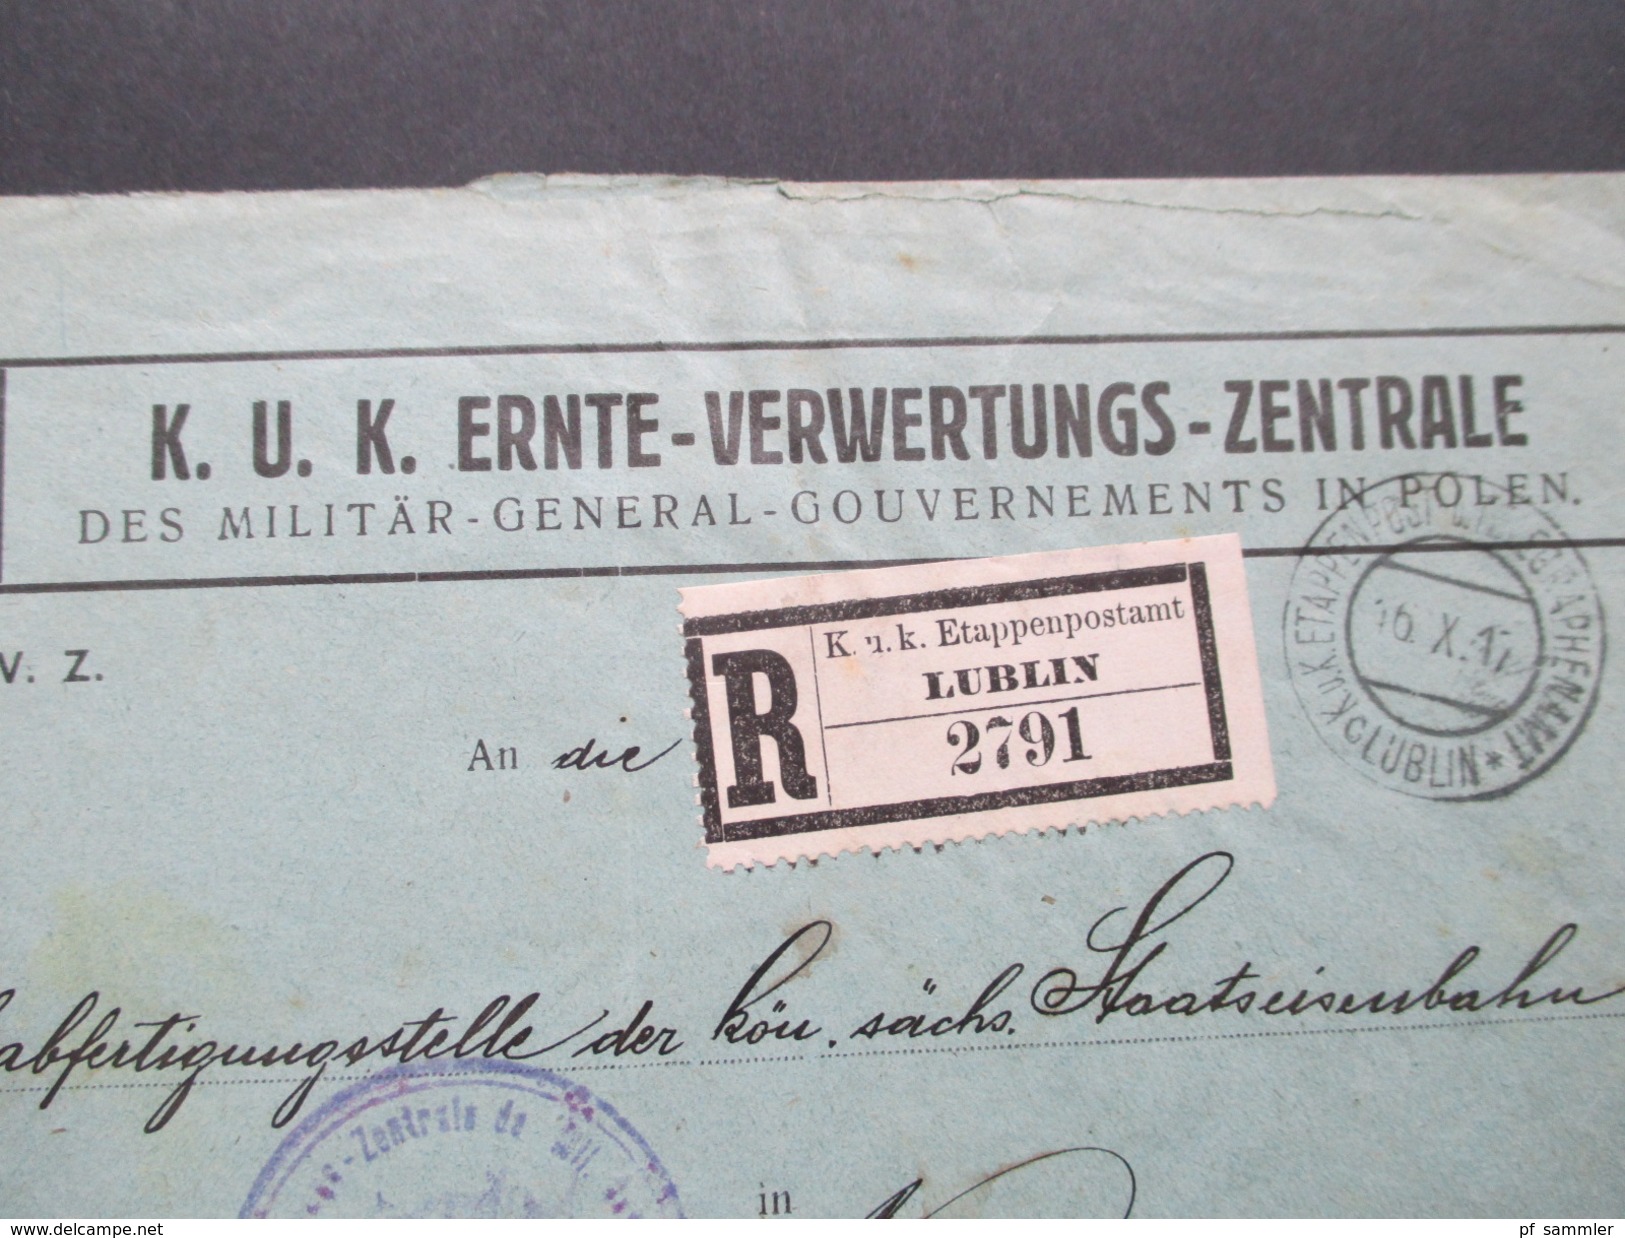 Österreich 1917 K.u.K. Ernte - Verwertungs - Zentrale. Etappenpostamt Lublin 2791. Telegraphenamt. Rekommandirt.Dienst - Briefe U. Dokumente